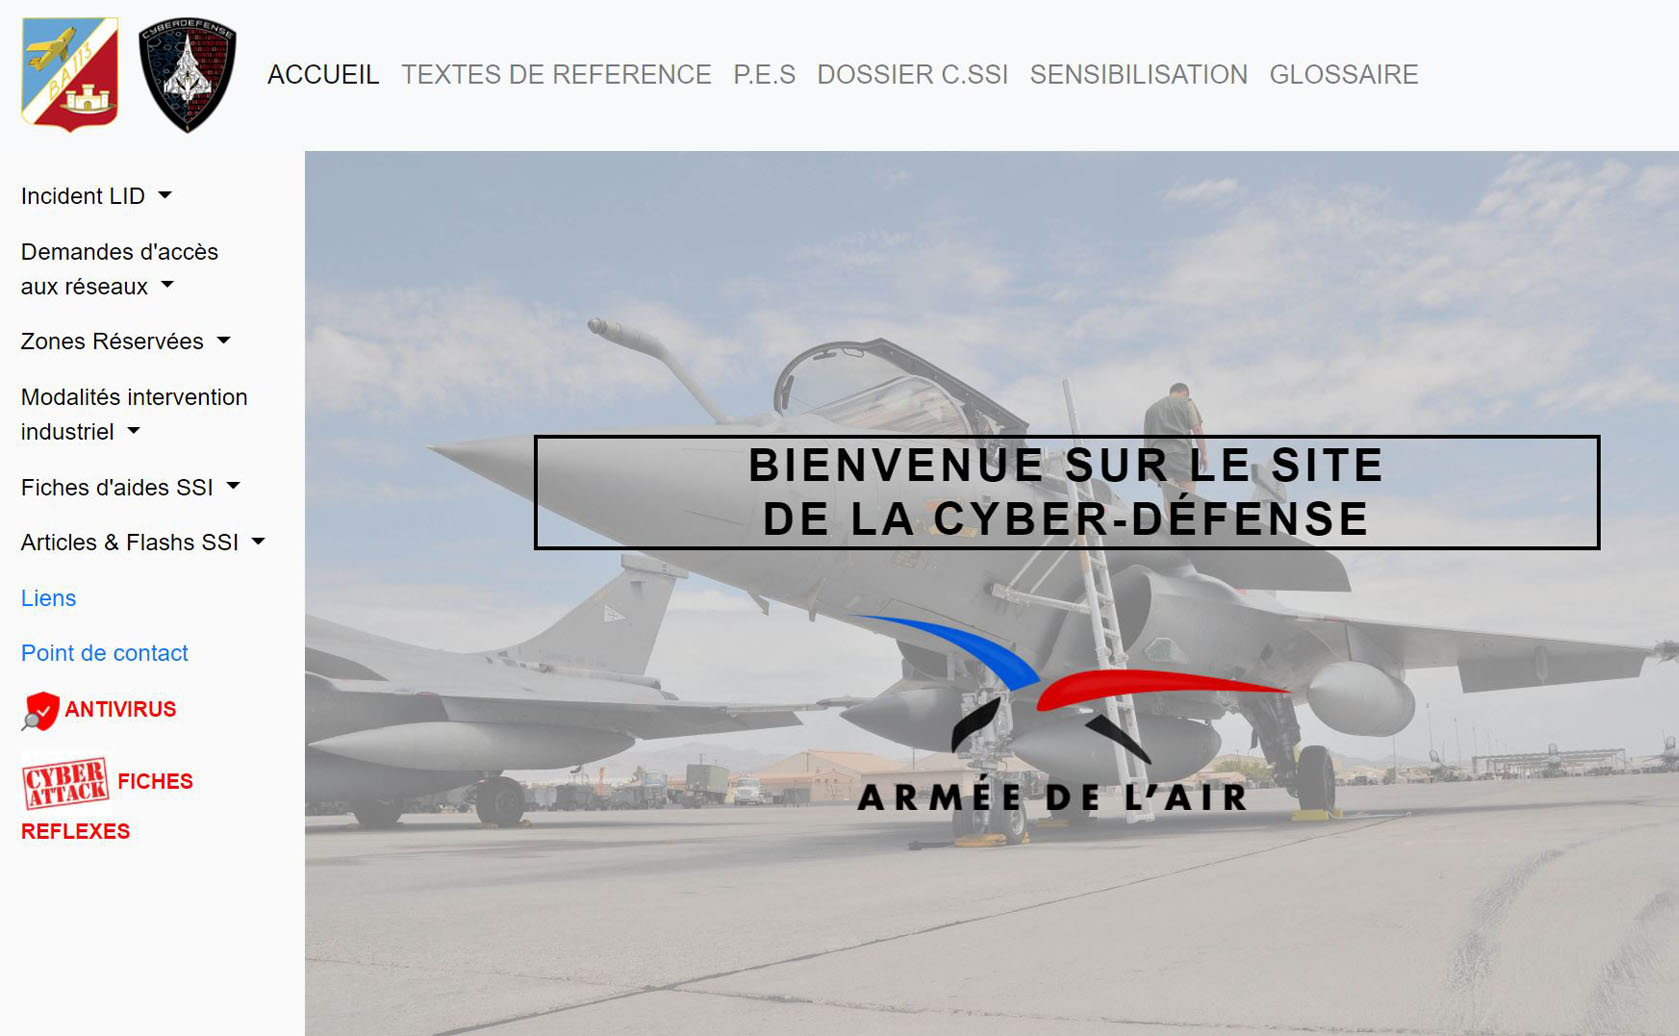 image de la page d'accueil du site de la cyber-défense